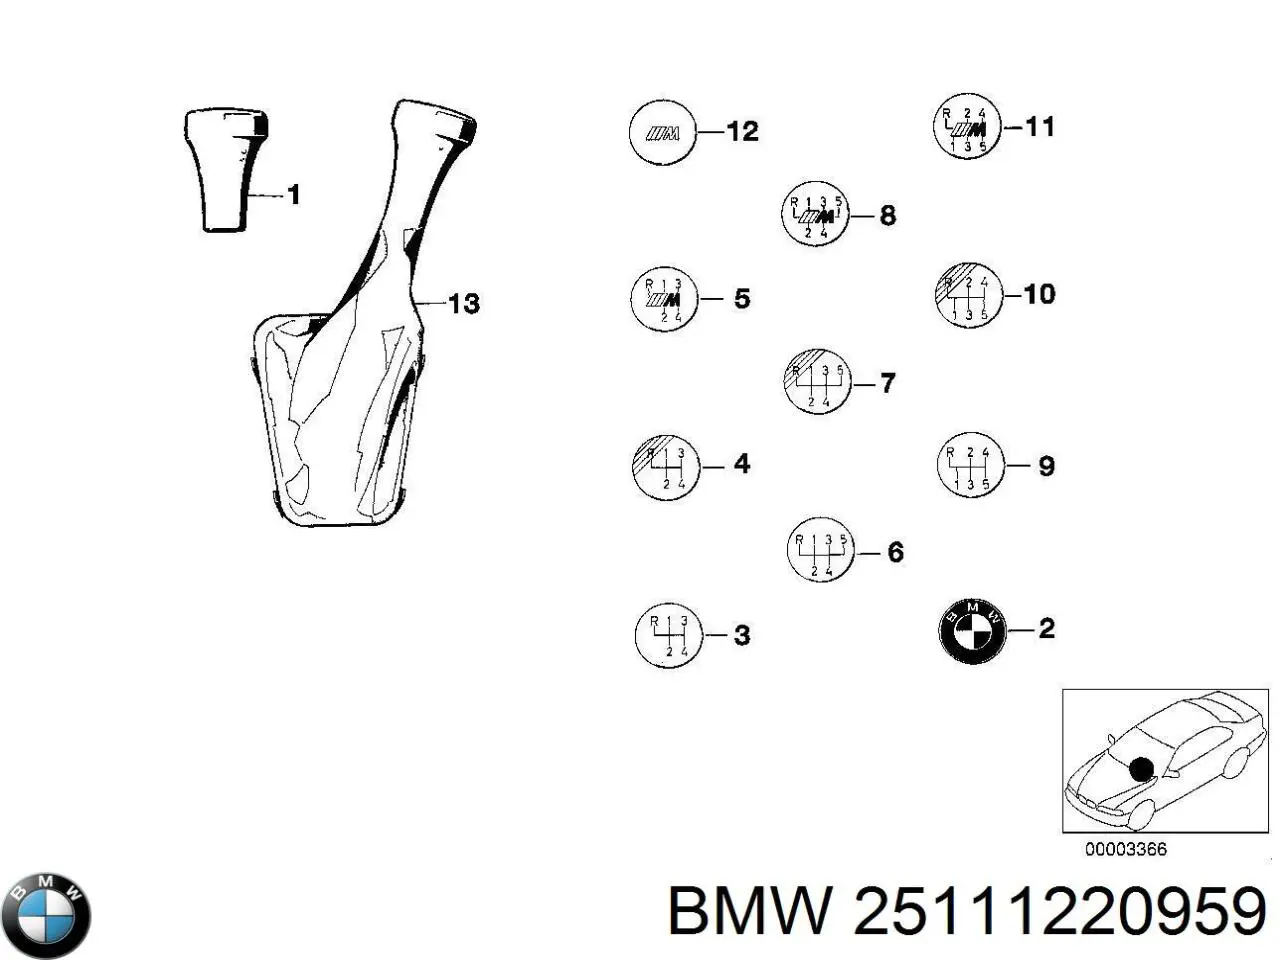 25111220951 BMW emblema de avalanca de mudança da caixa de mudança